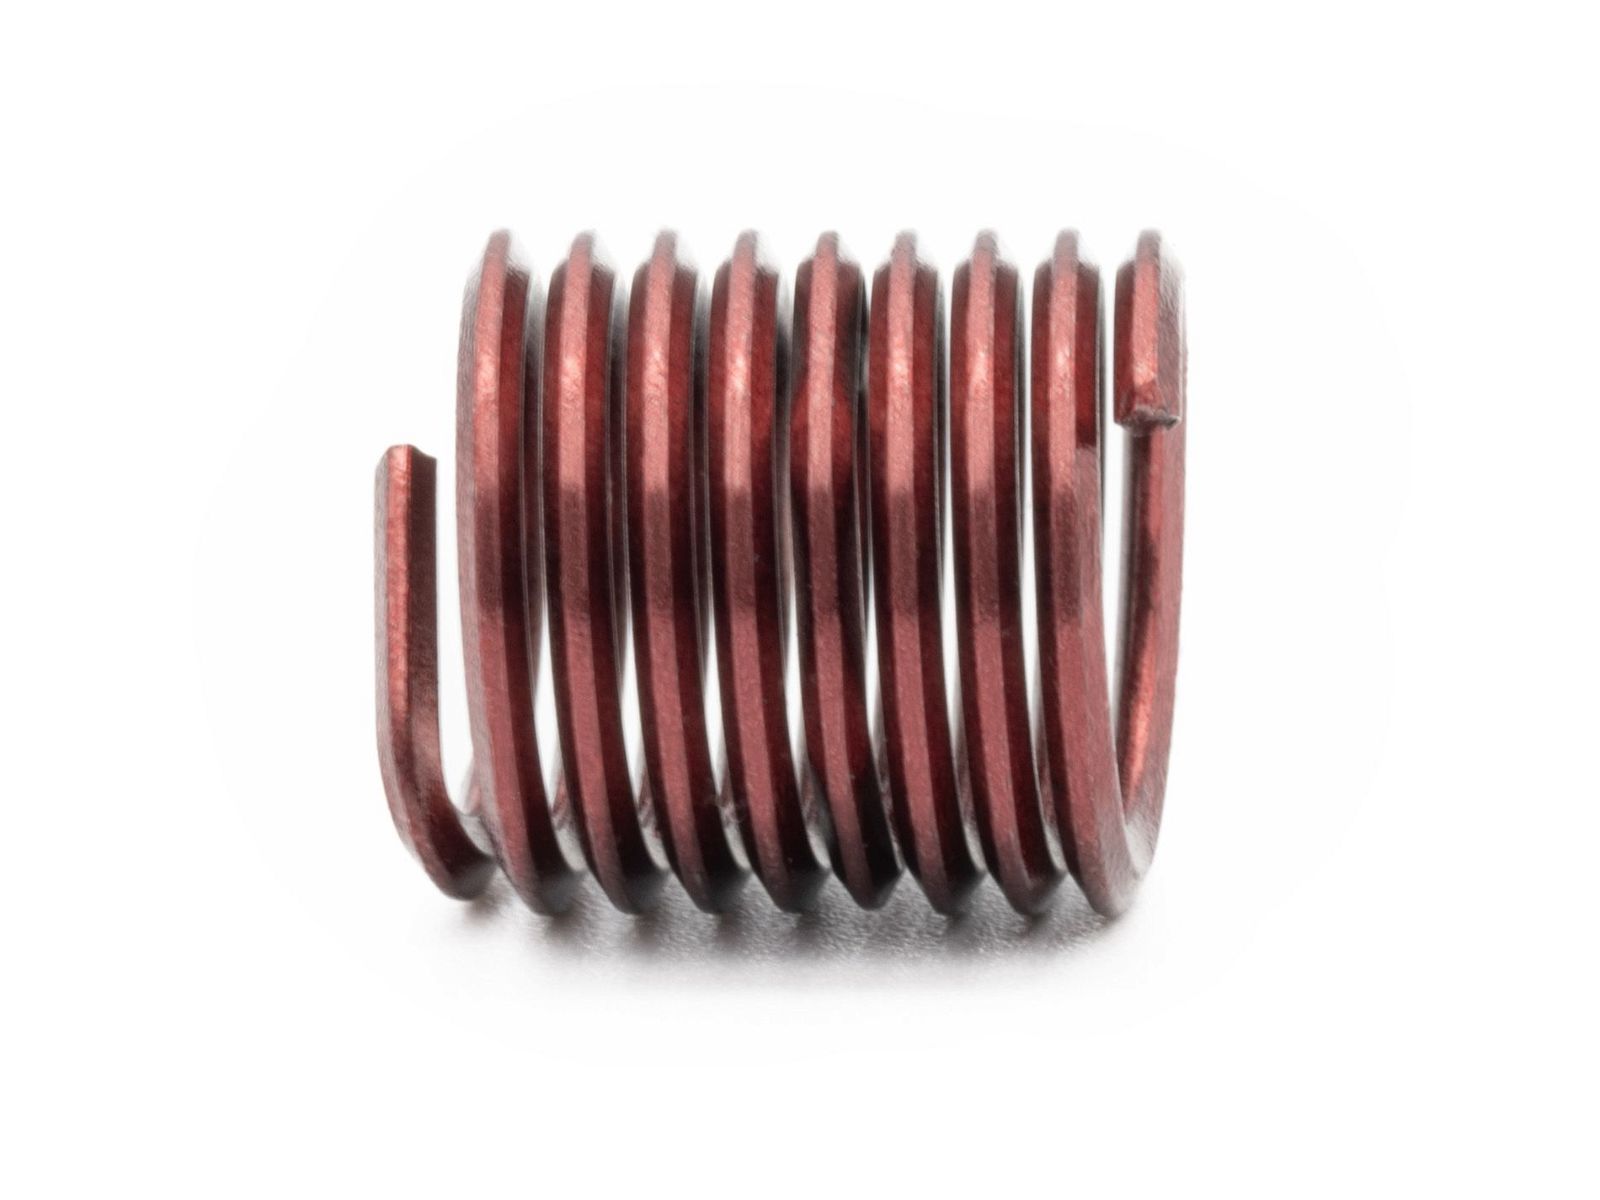 BaerCoil Wire Thread Inserts M 6 x 1.0 - 1.5 D (9 mm) - screw grip (screw locking) - 100 pcs.